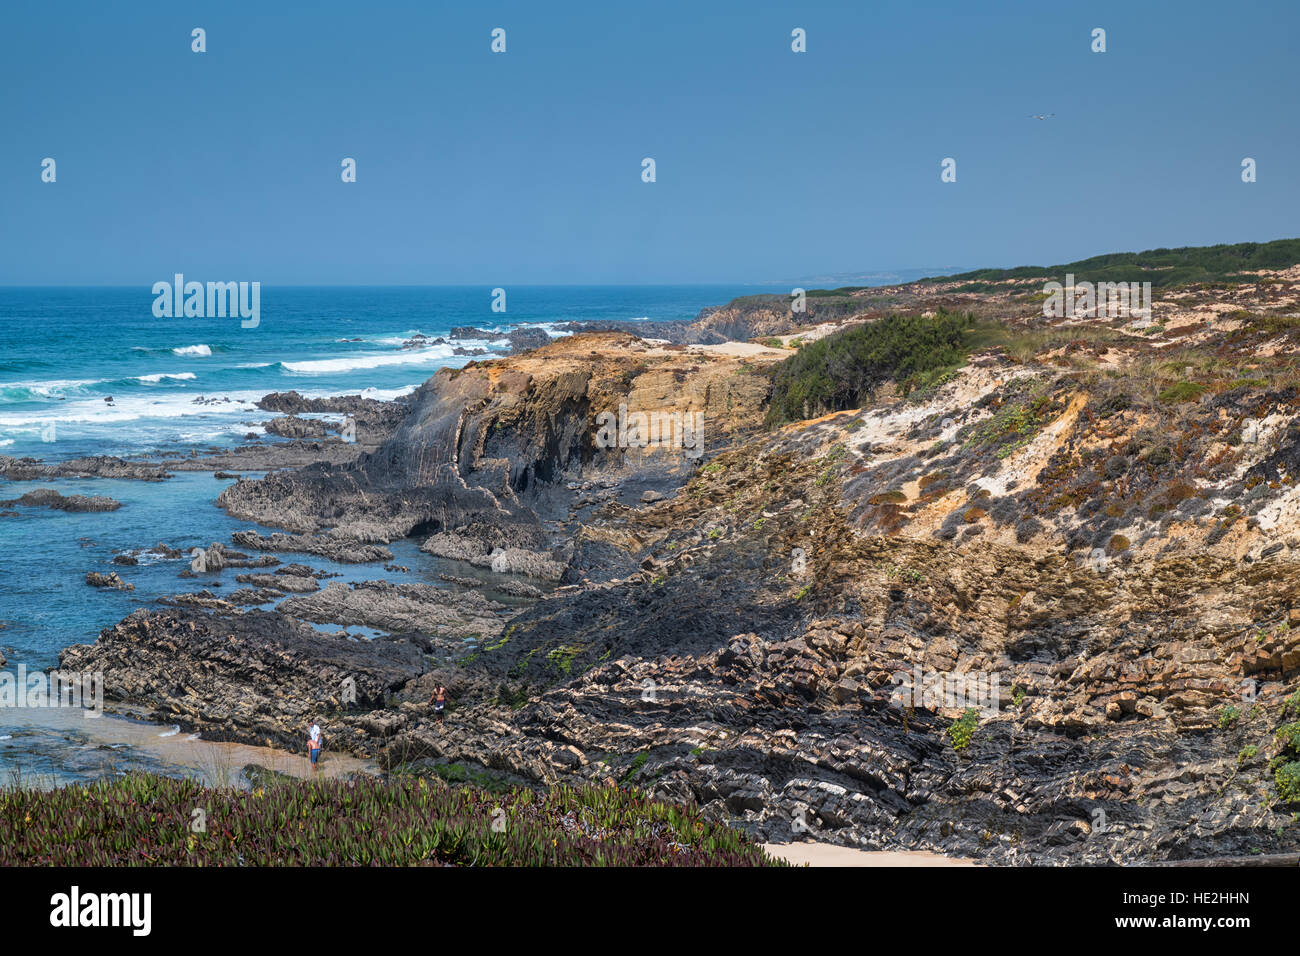 Una vista dell'oceano atlantico da una spiaggia con scogliere e rocce Foto Stock